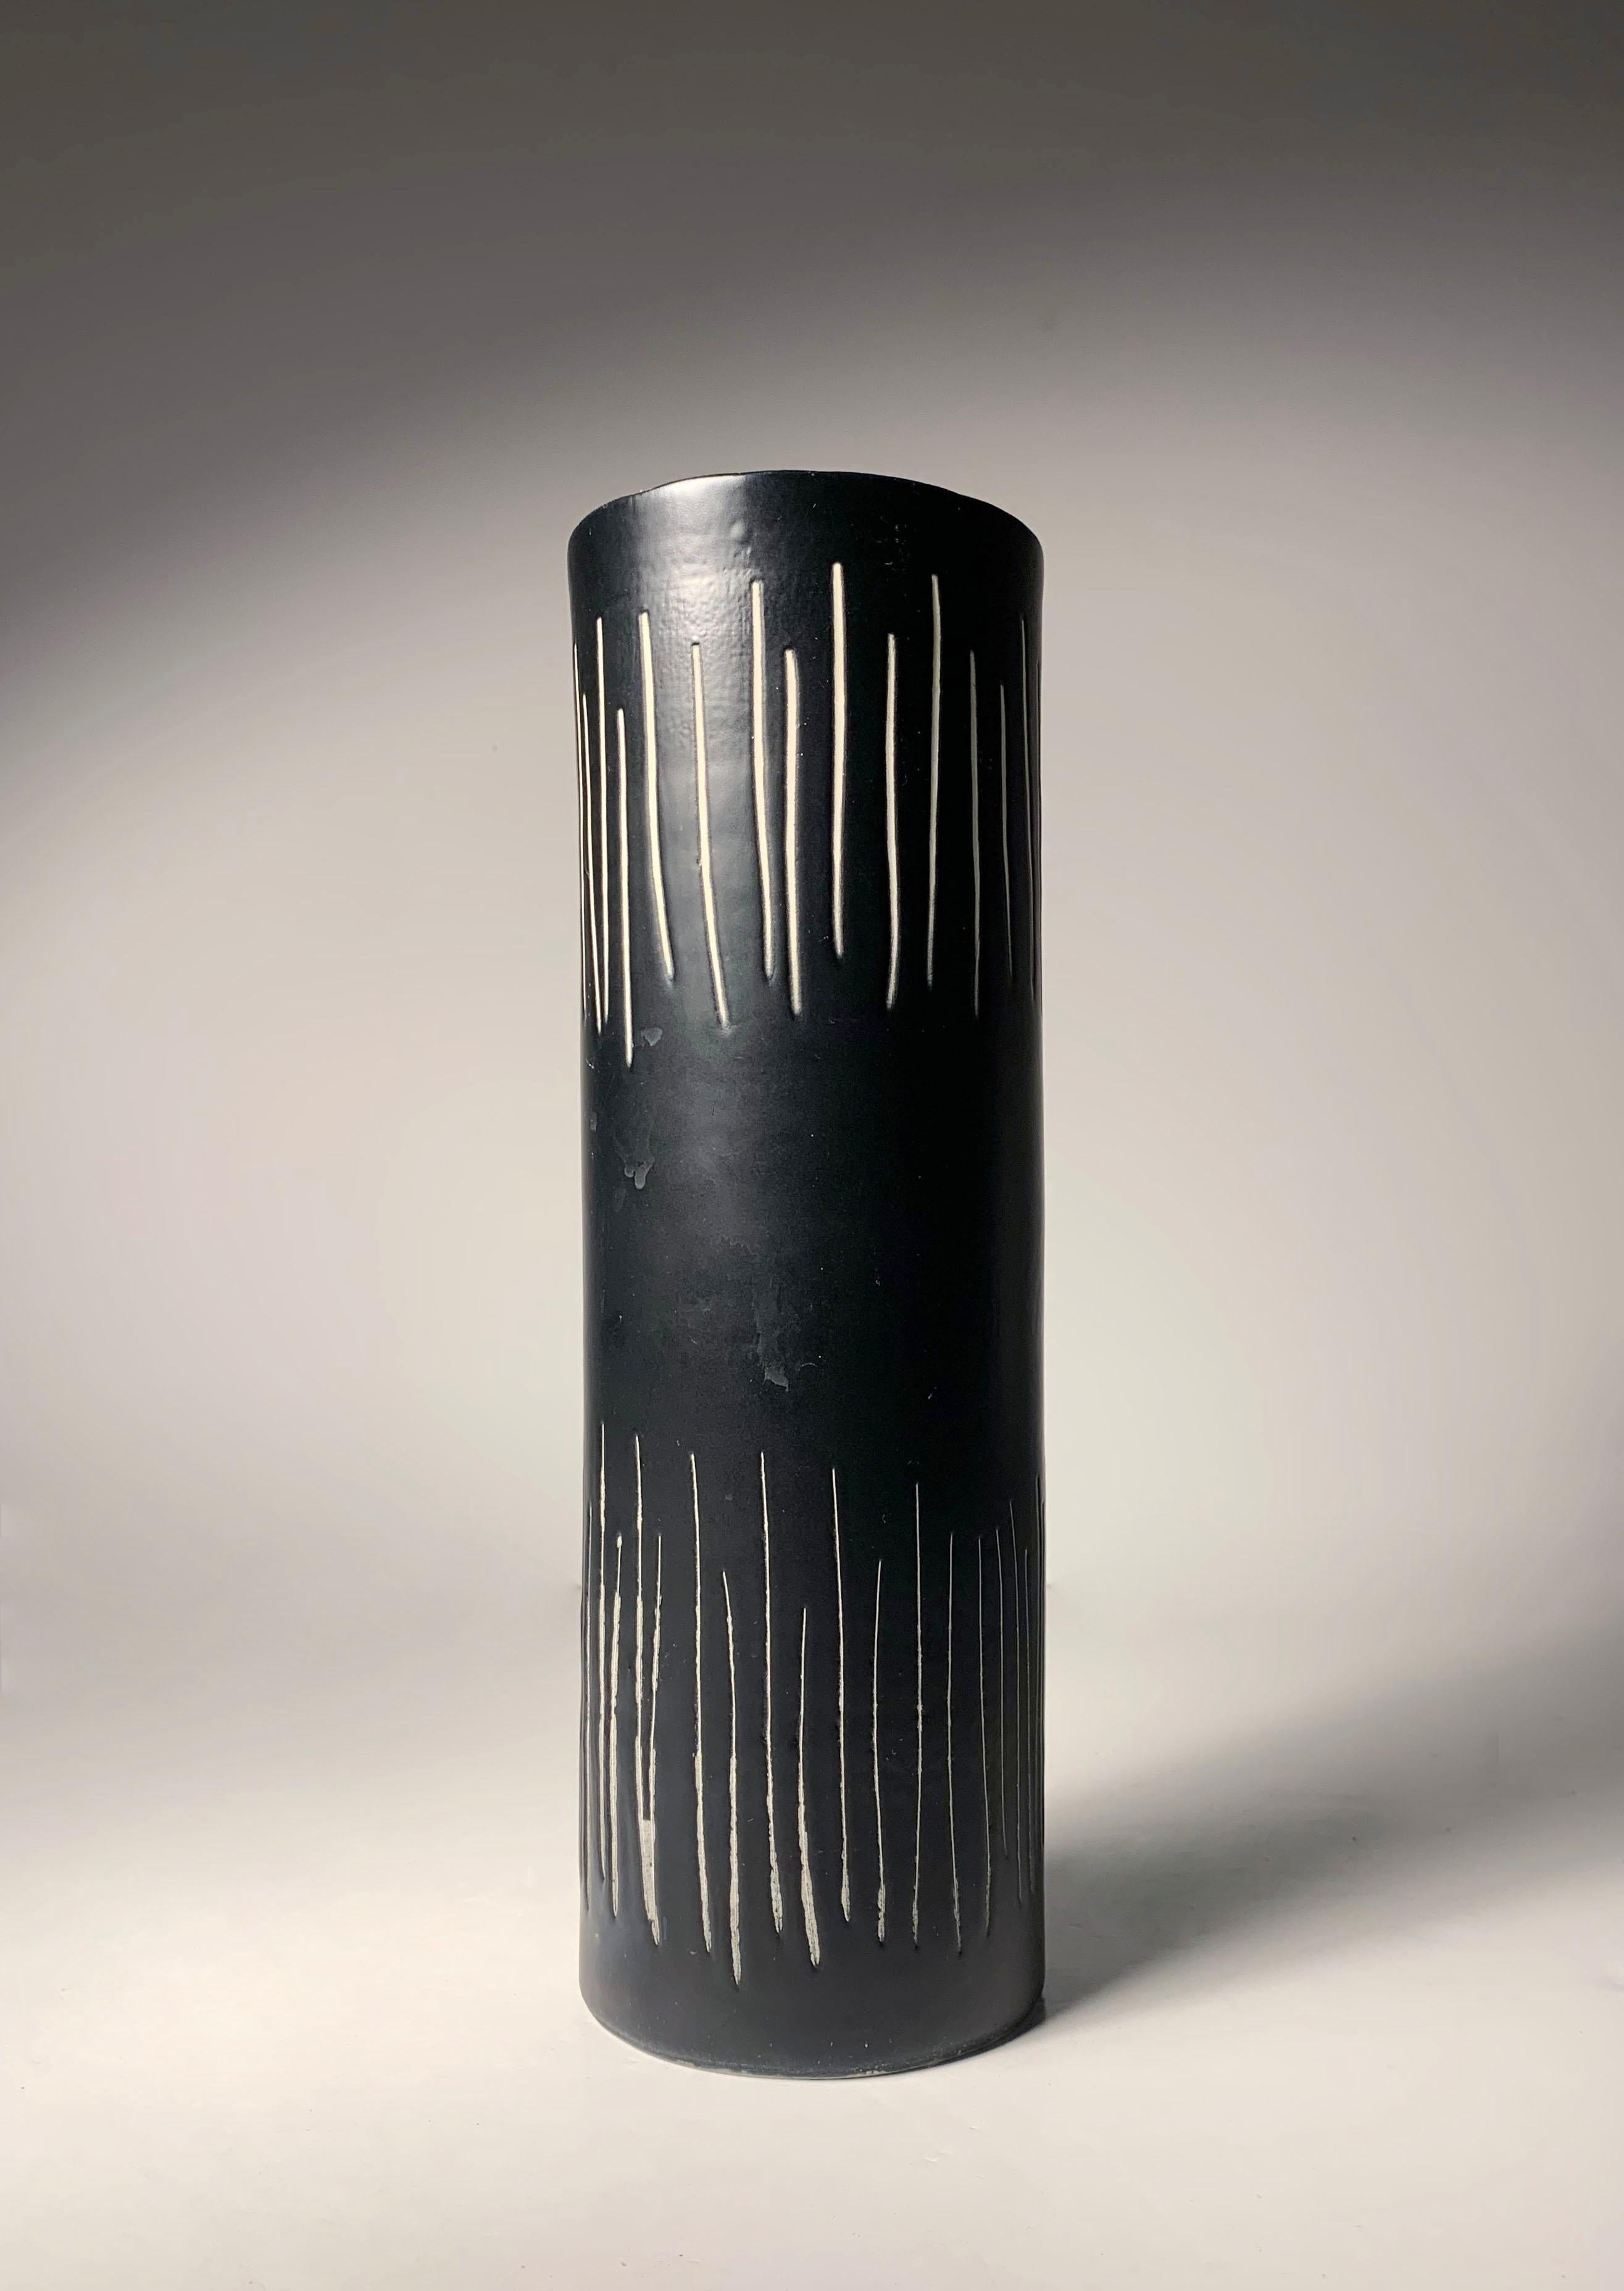 Vase vintage en céramique italienne par Alvino Bagni pour Bitossi / Raymor. Comme le montre le détail de l'intérieur, il s'agit de vases jetés à la main.